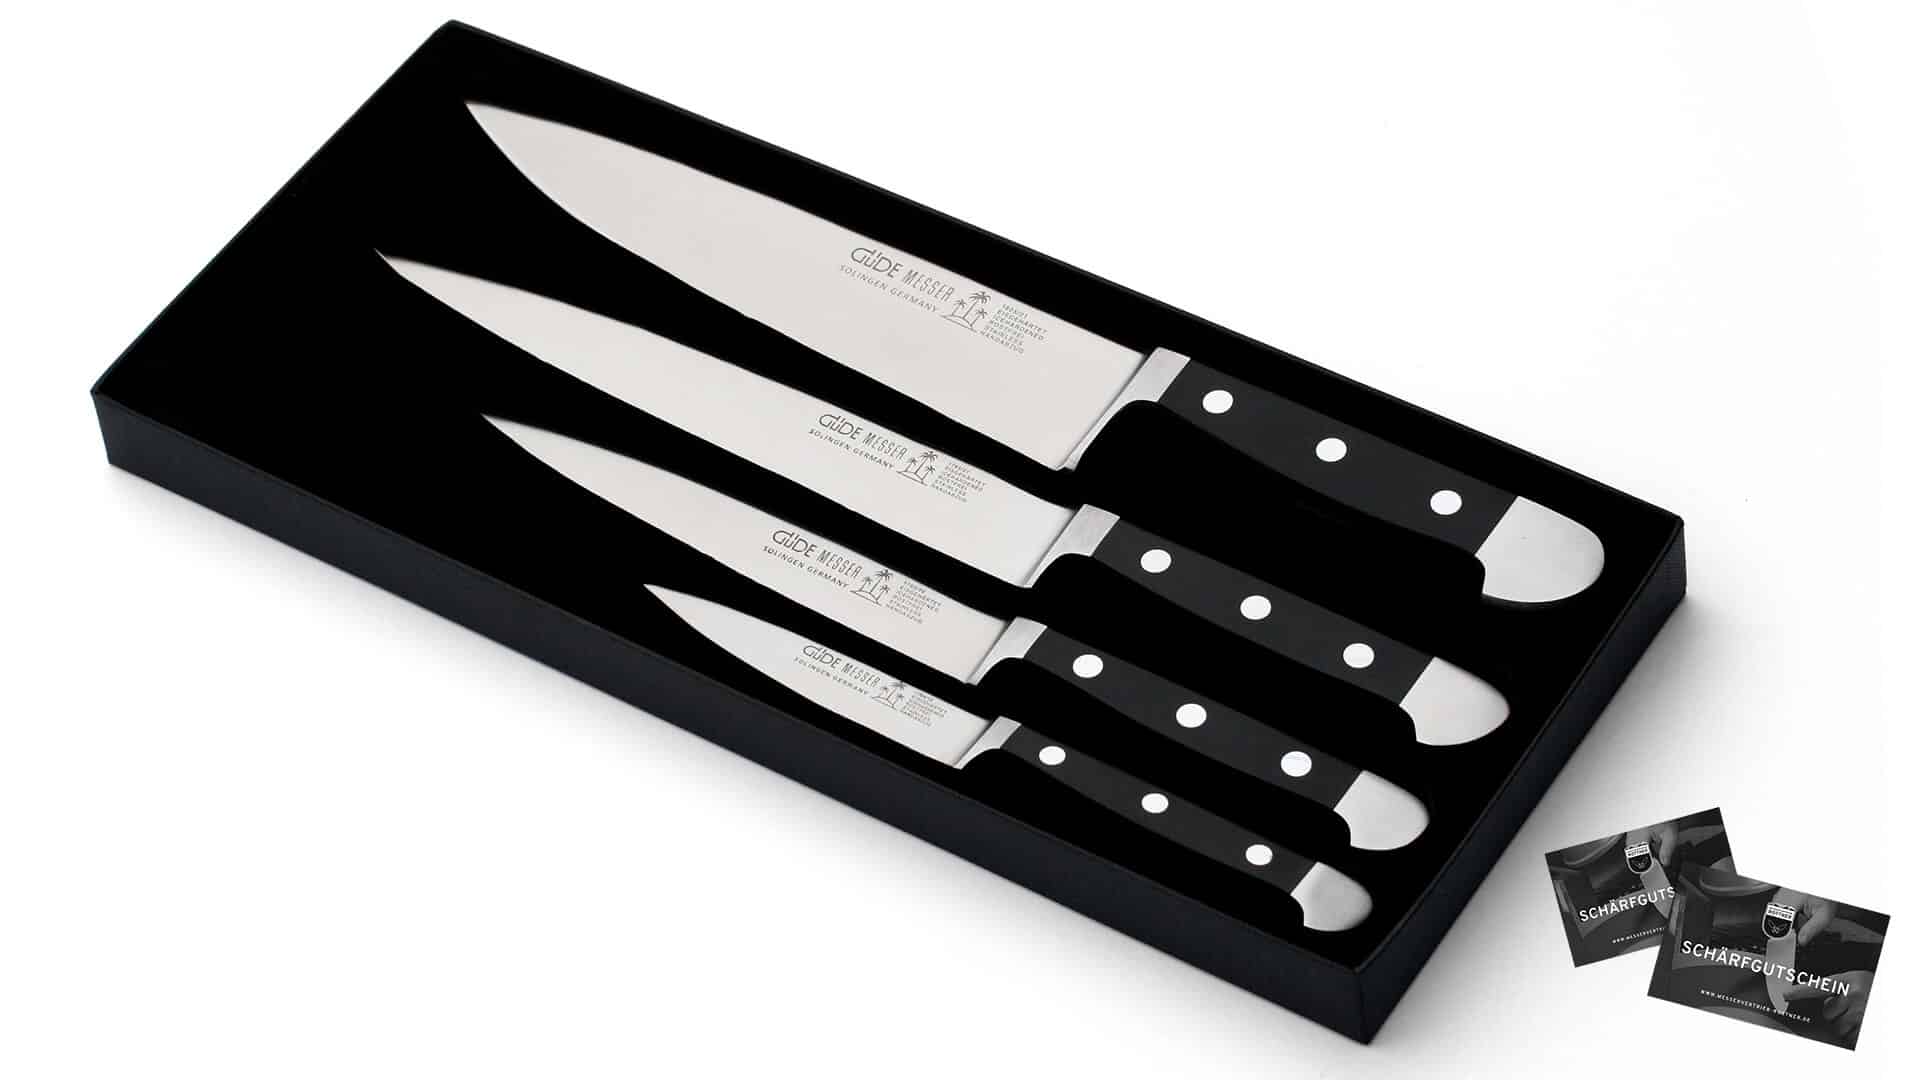 6-teiliges Messerset für Kochschüler -Schweizer Messer Shop